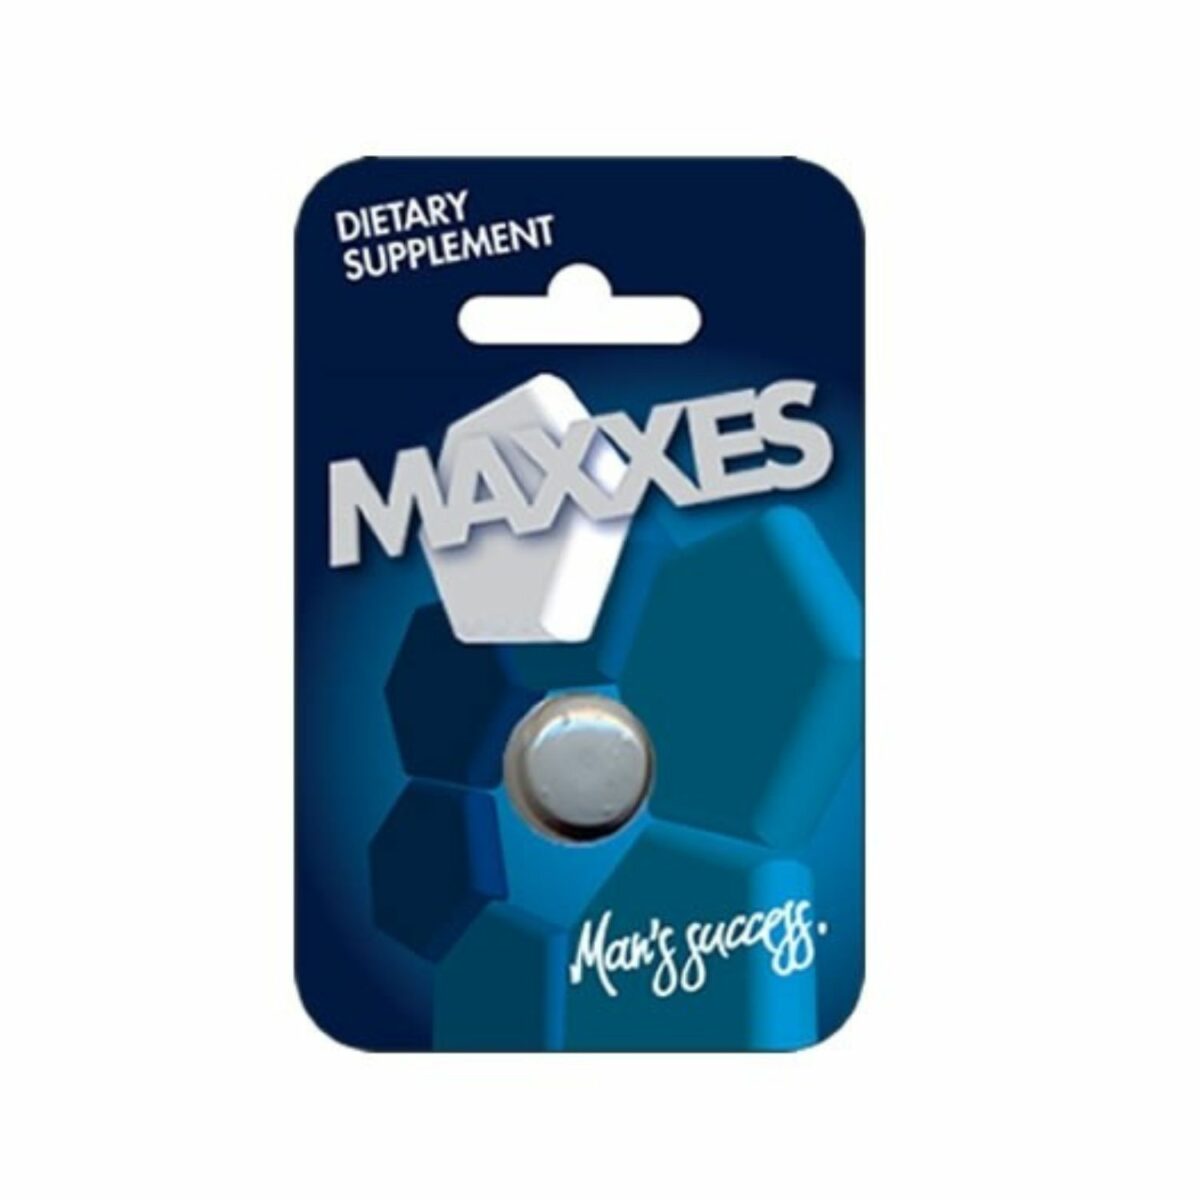 Maxxes 1 tableta